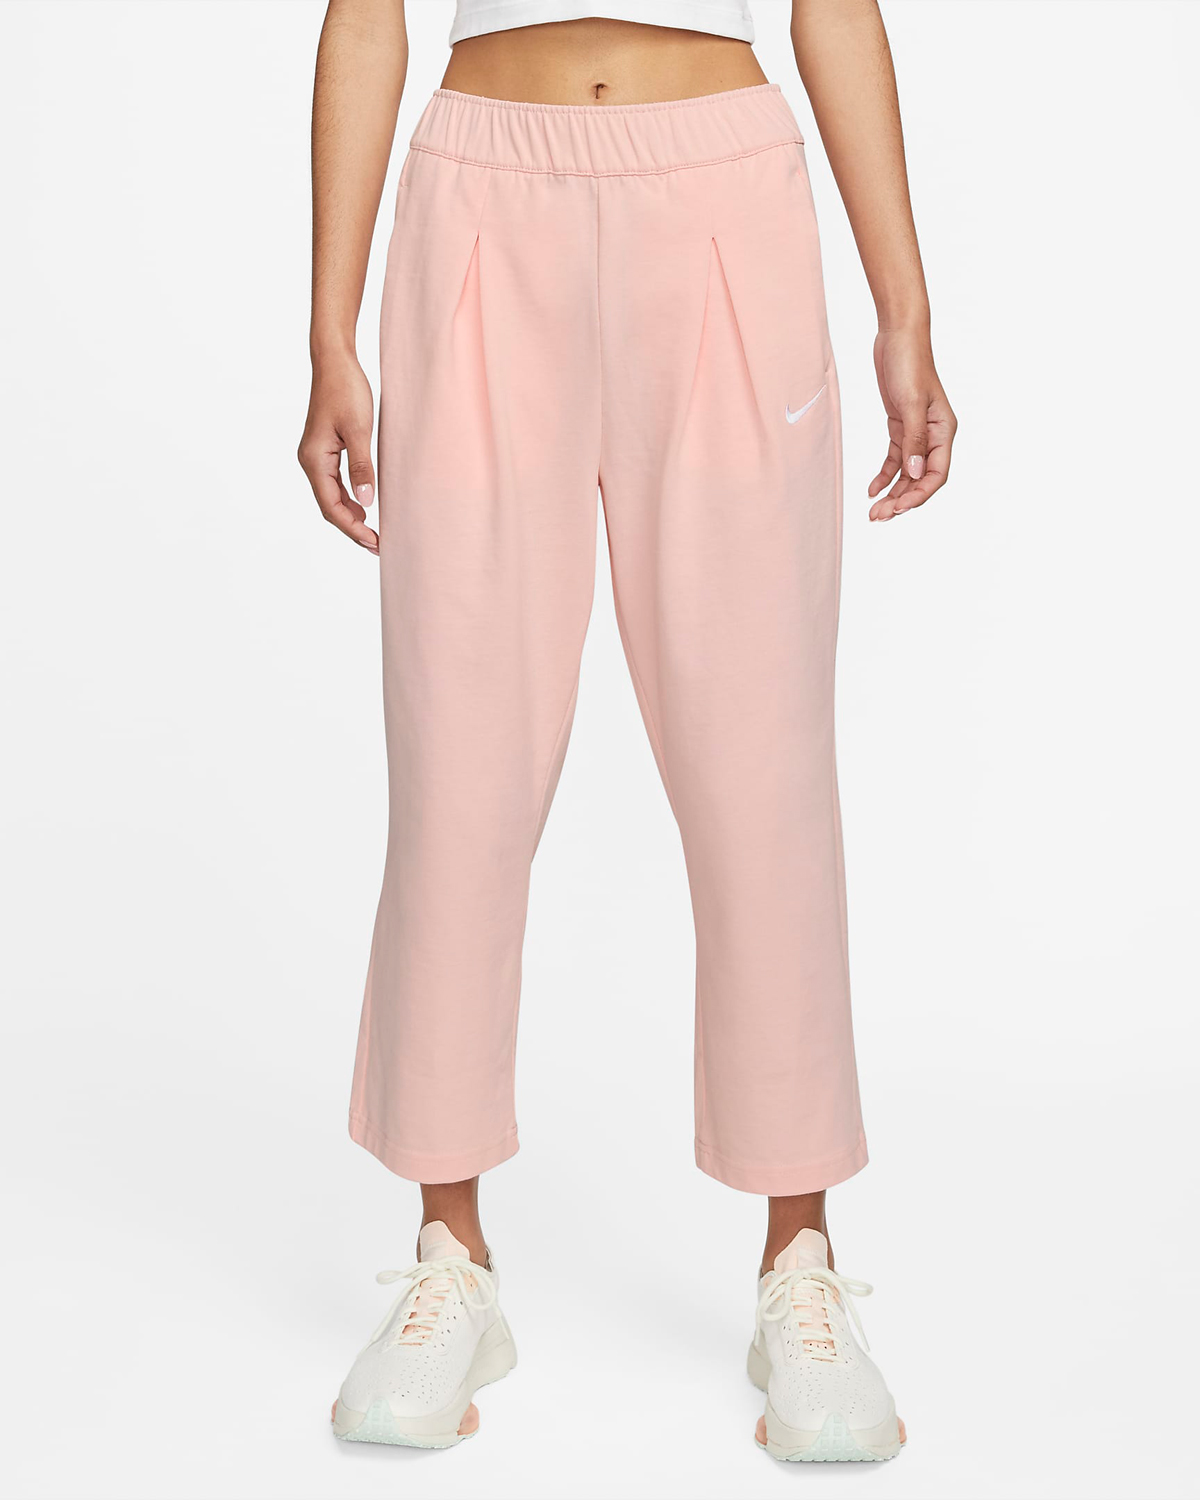 Nike-Sportswear-Womens-Jersey-Pants-Atmosphere-Pink